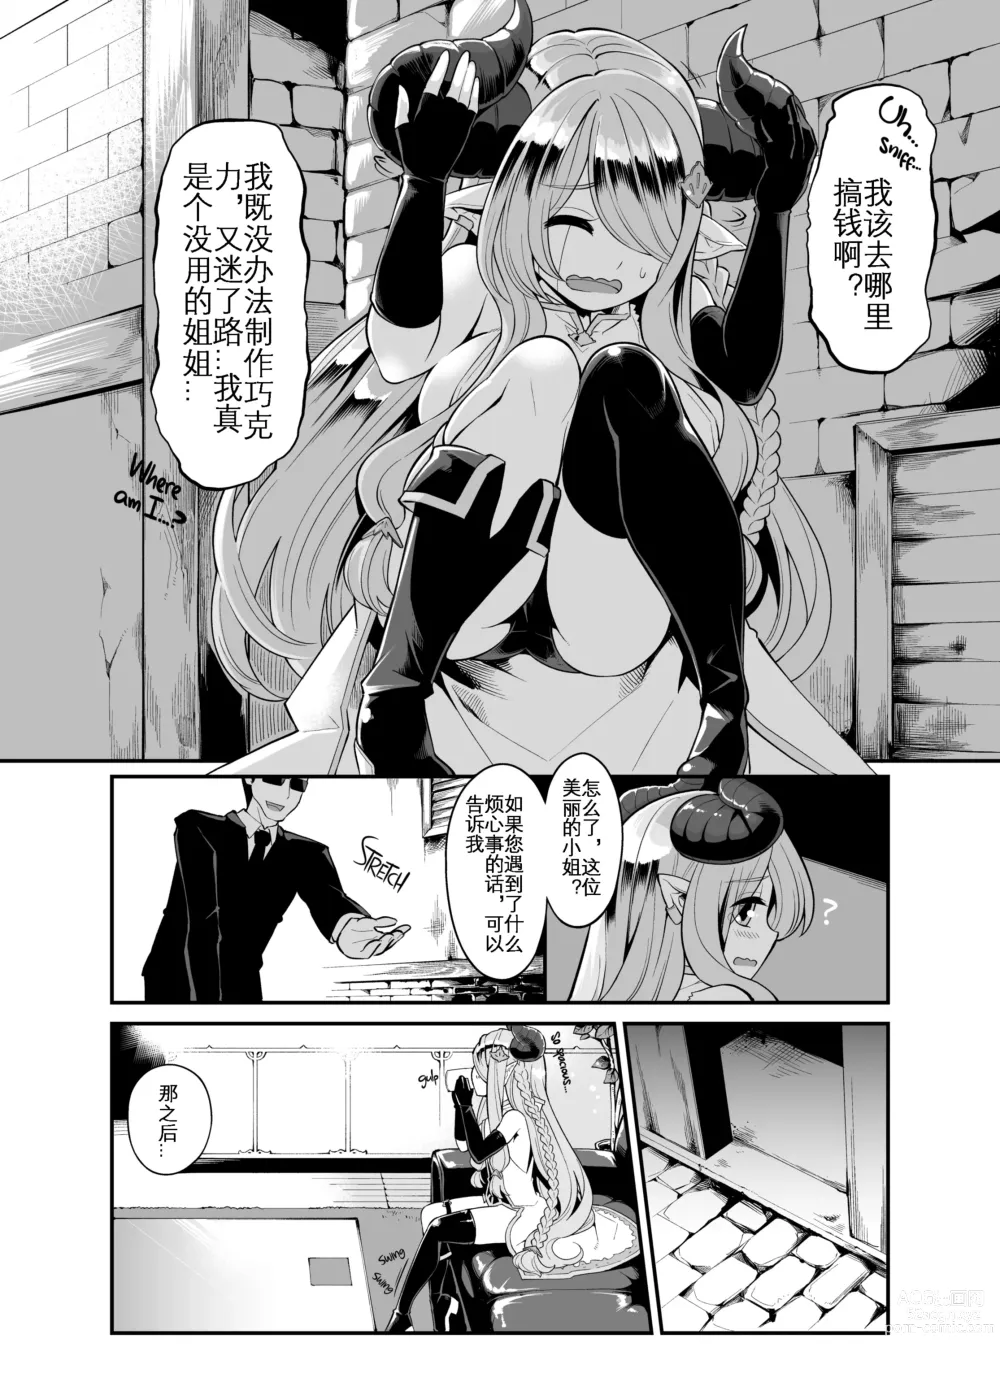 Page 6 of doujinshi 将角人族美少女骗去啪啪啪 (decensored)